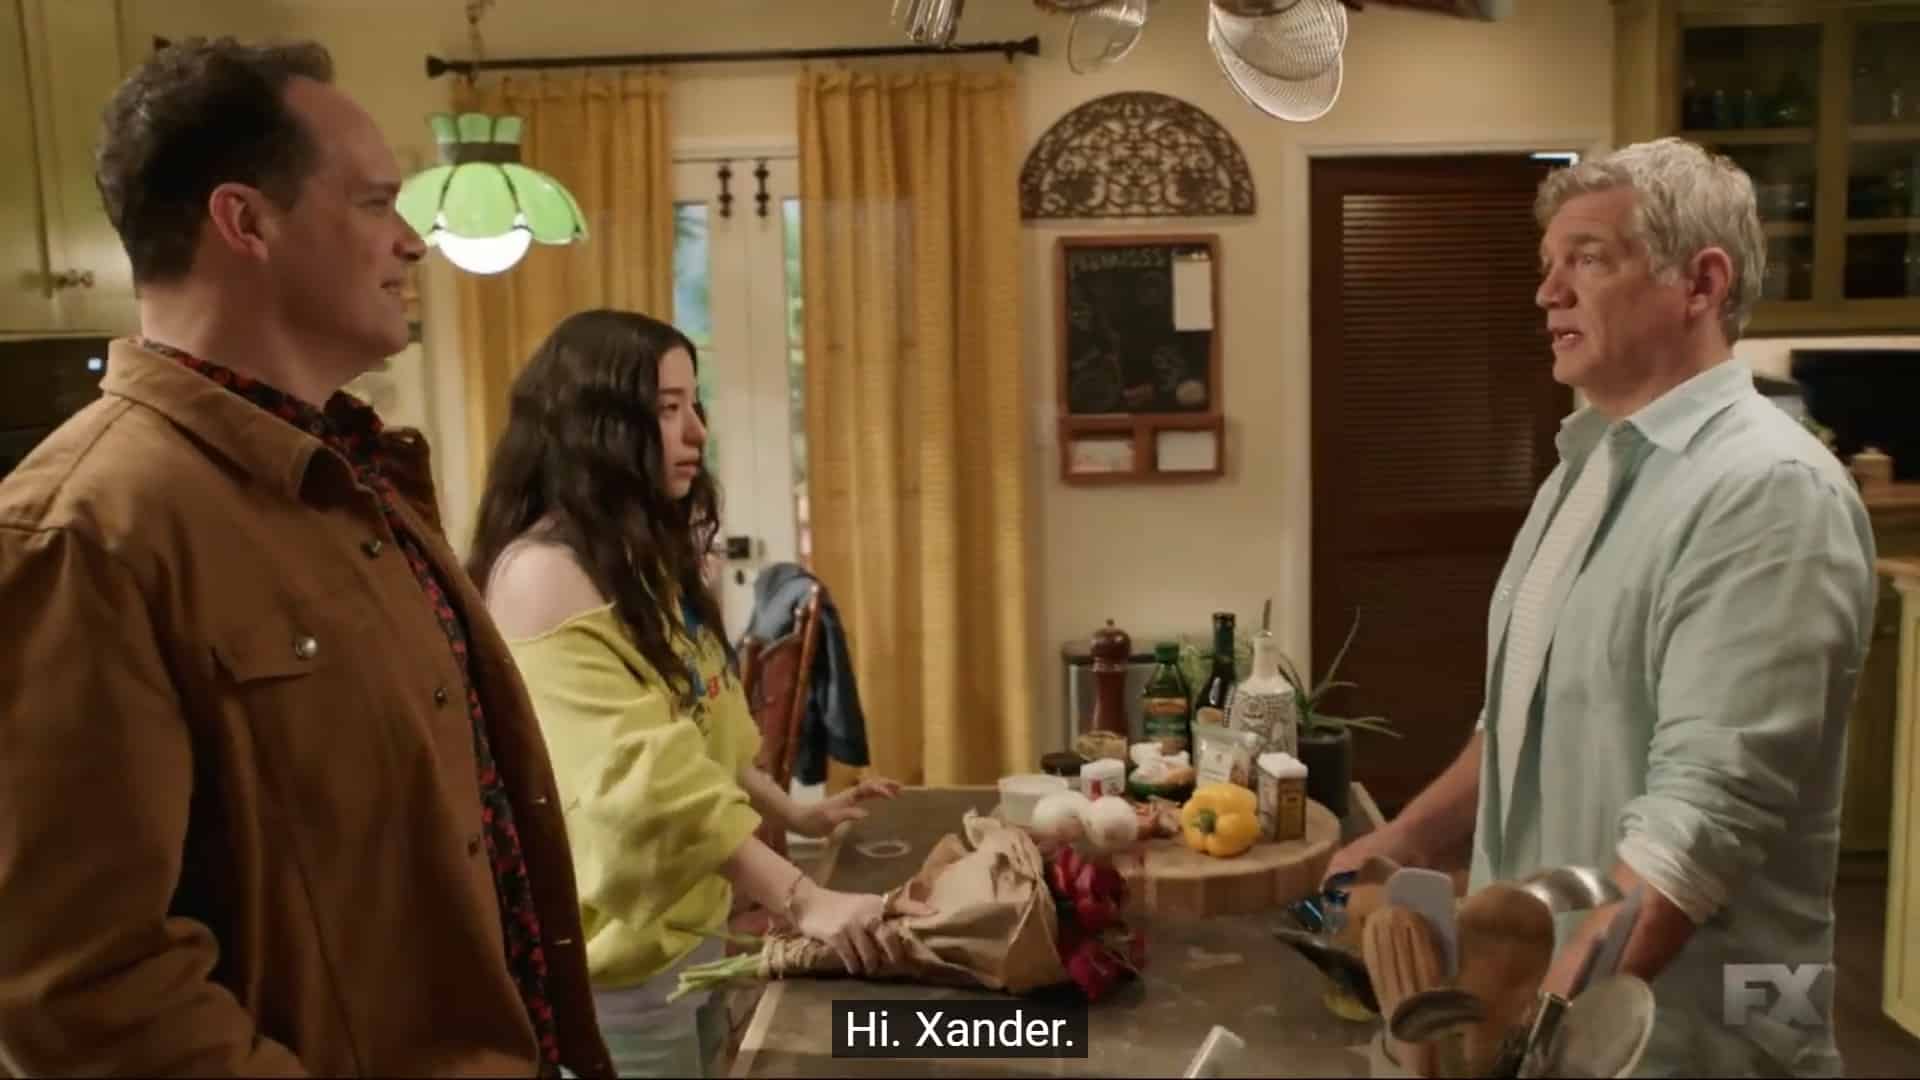 Rich seeing Xander in Sam's kitchen, uninvited by Sam